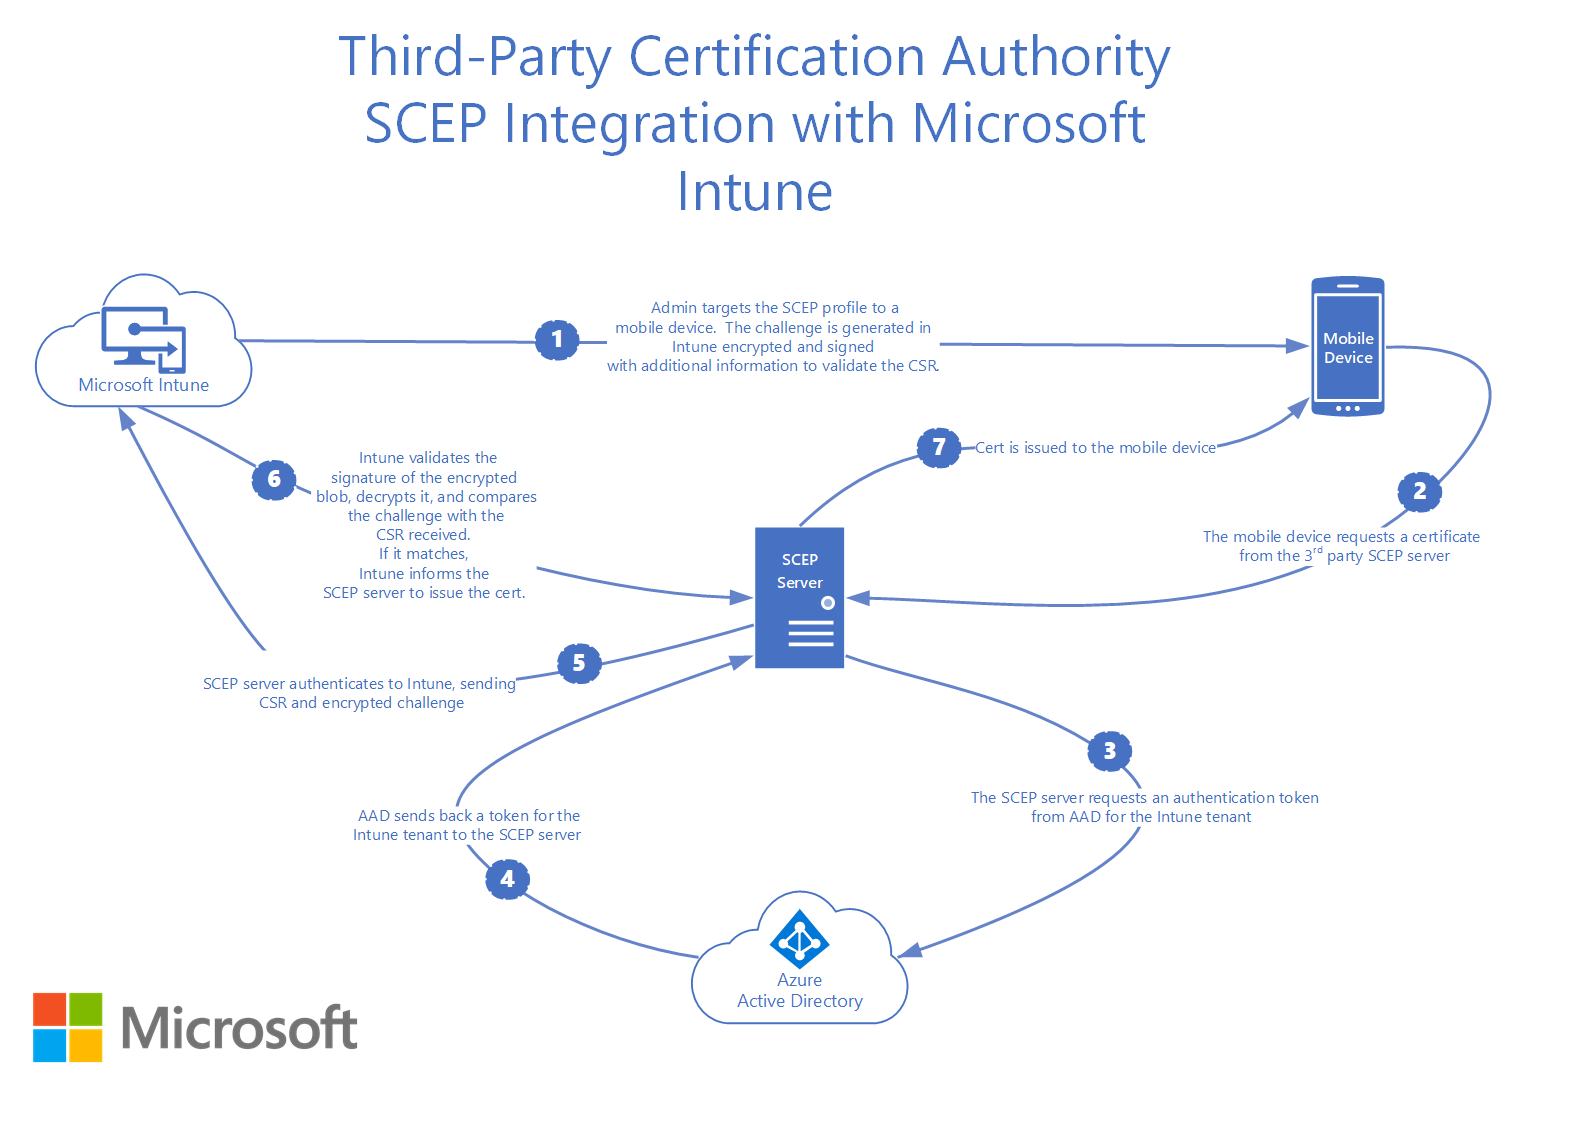 サード パーティの証明機関 SCEP と Microsoft Intuneの統合方法